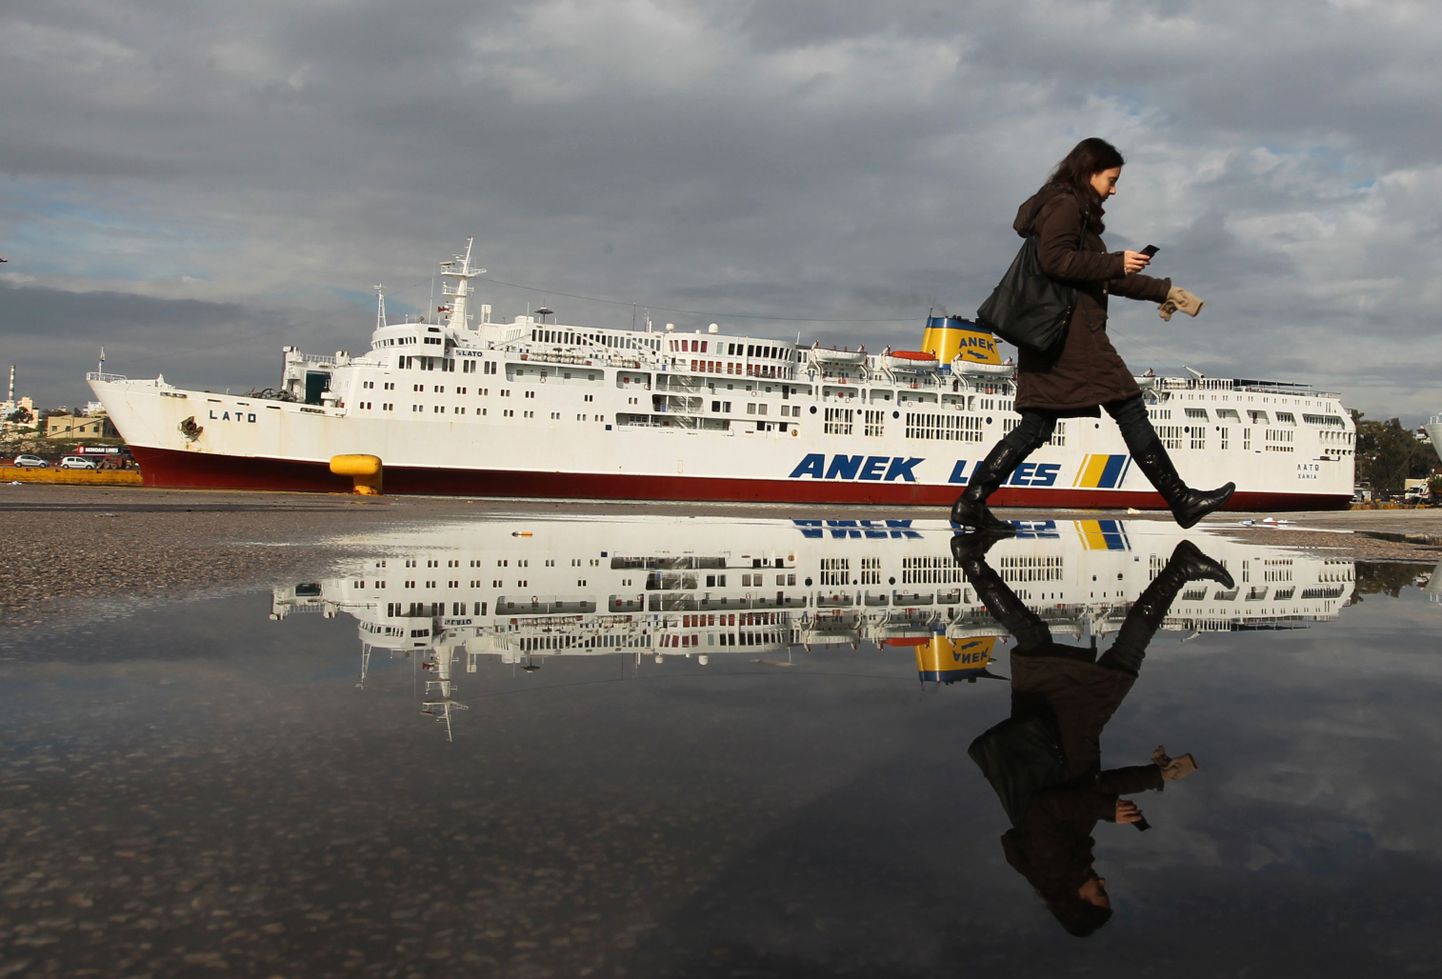 Kreeka üldstreigi tõttu on halvatud mereliiklus. Pildil laev täna Pireuse sadamas.